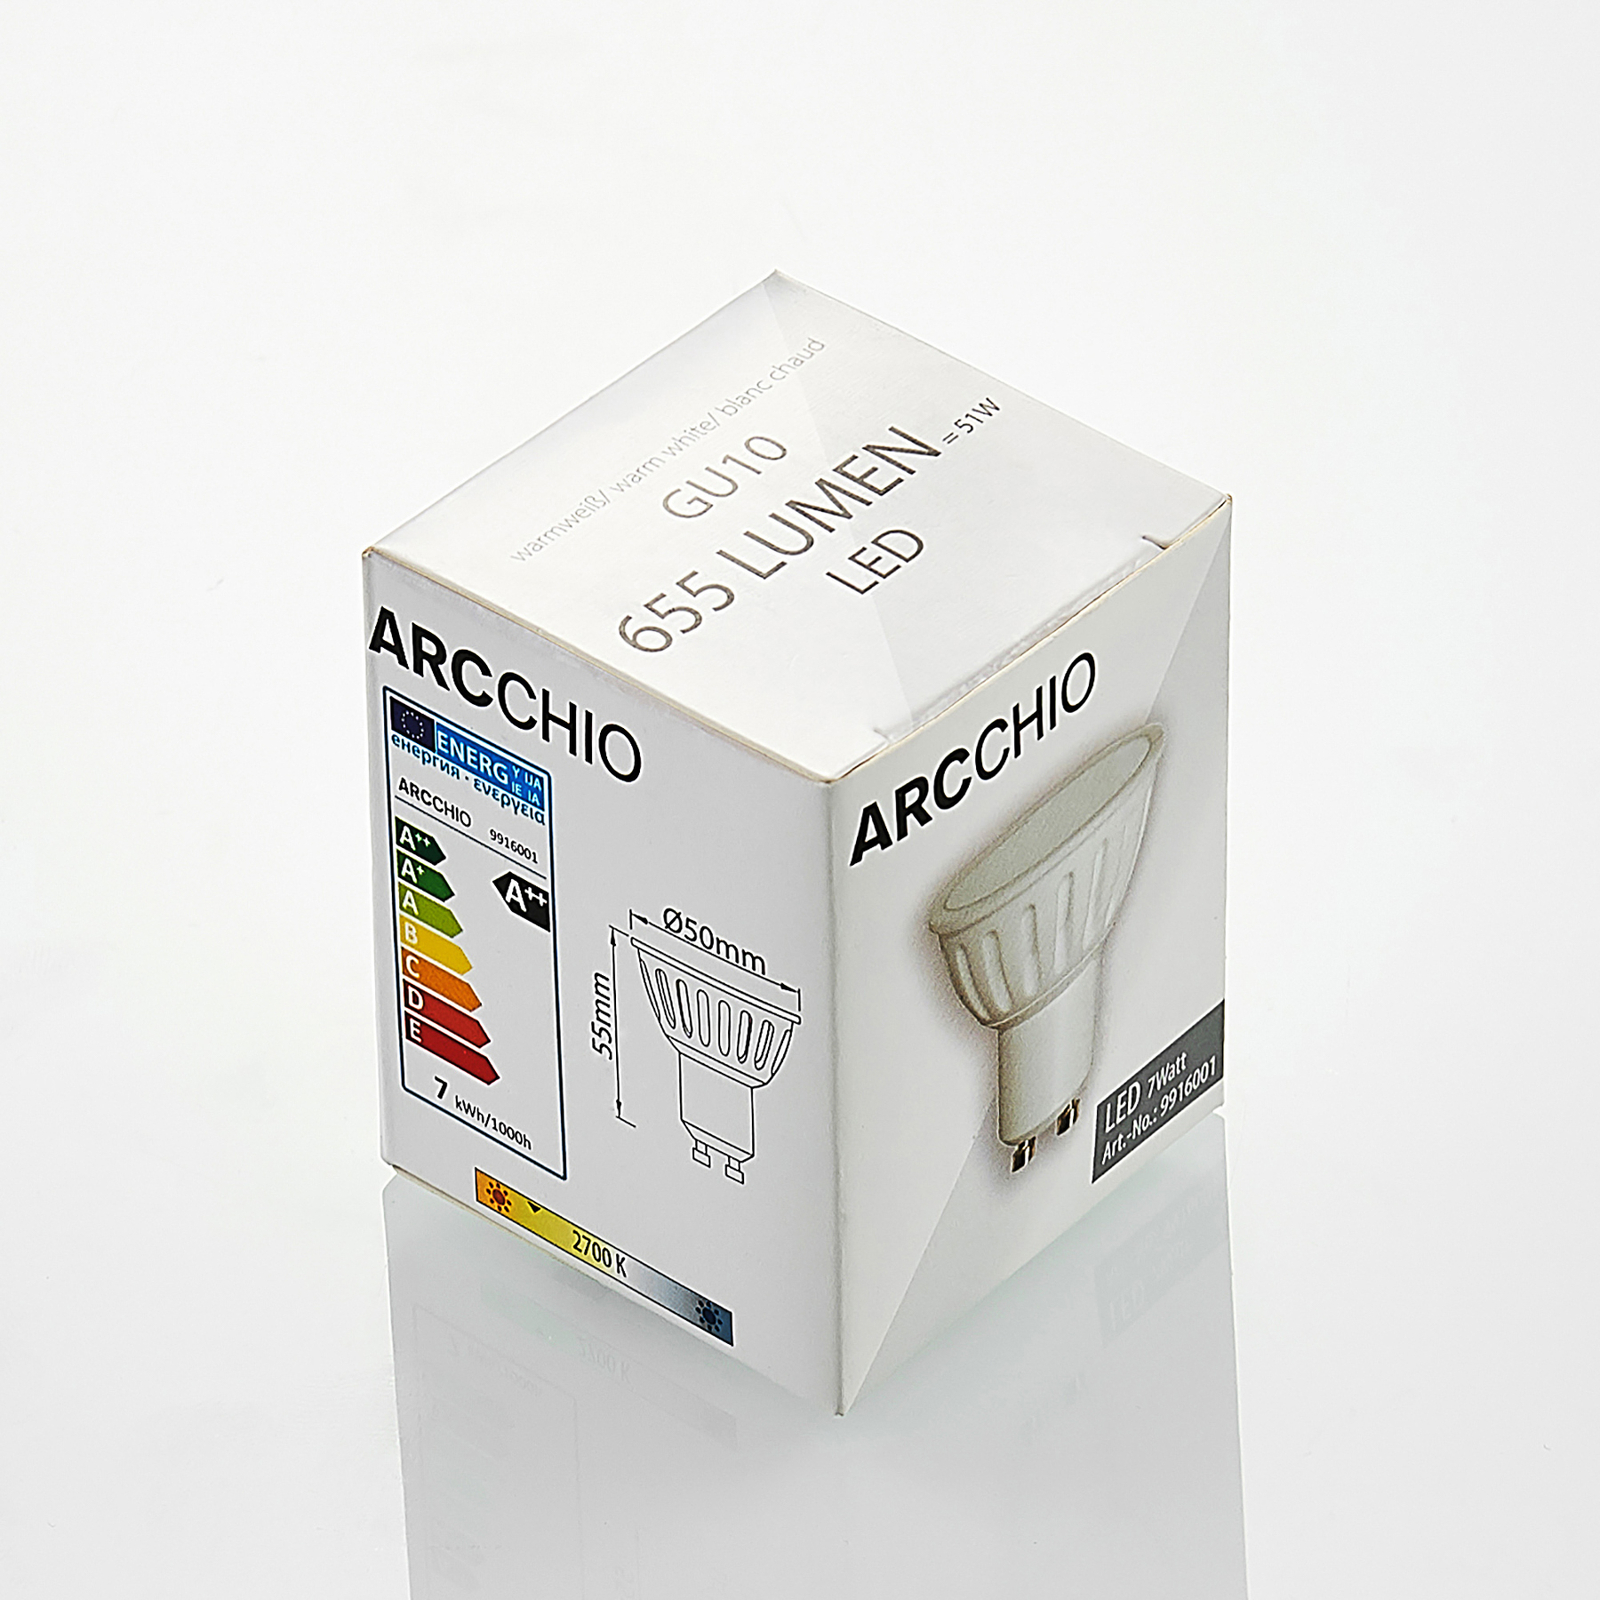 Arcchio LED-reflektor GU10 100° 5W 3 000 K 3-pack